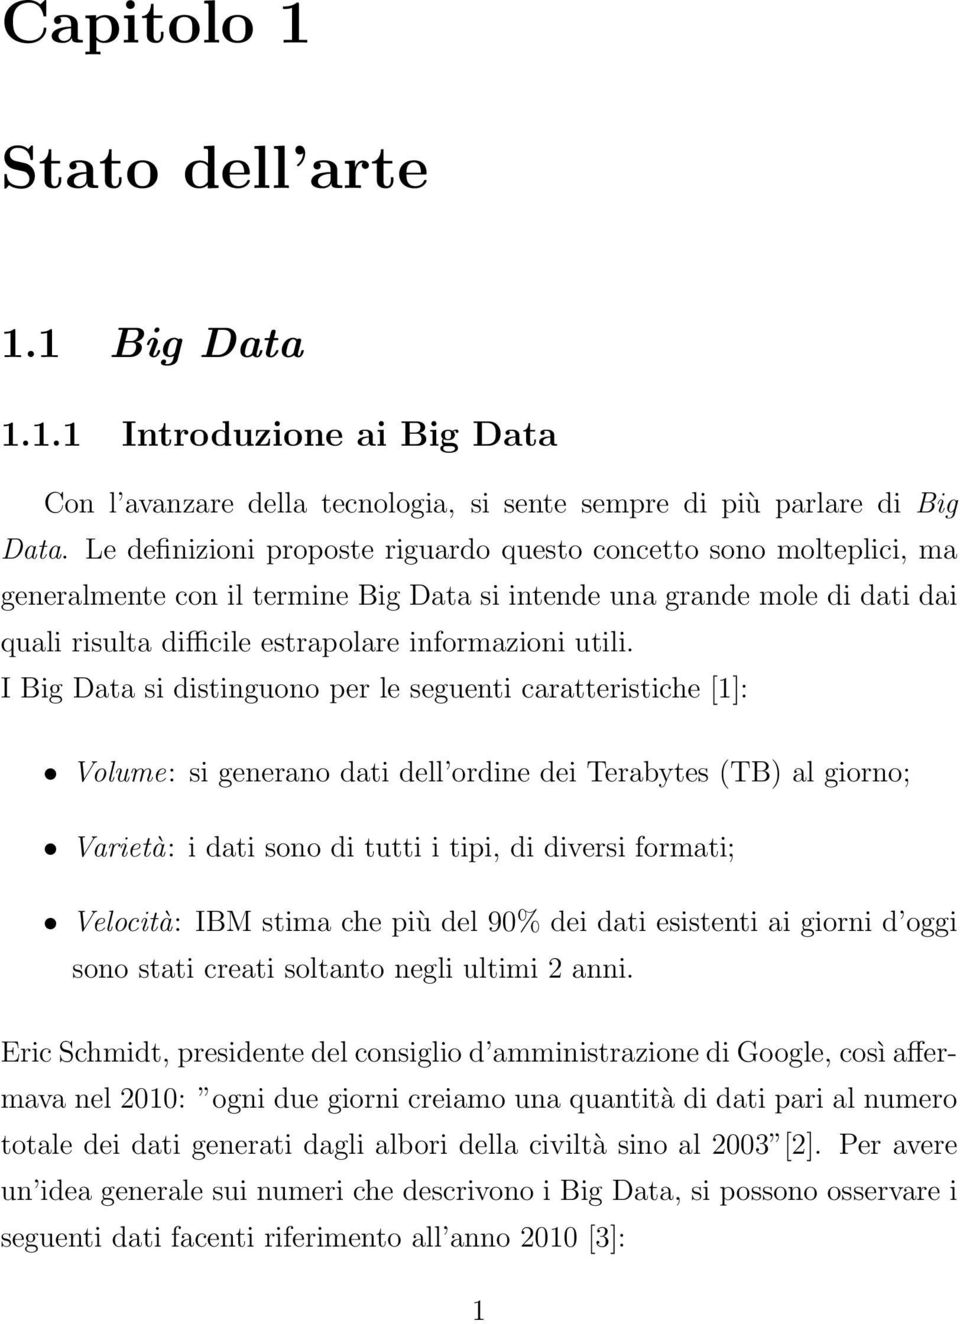 I Big Data si distinguono per le seguenti caratteristiche [1]: Volume: si generano dati dell ordine dei Terabytes (TB) al giorno; Varietà: i dati sono di tutti i tipi, di diversi formati; Velocità: